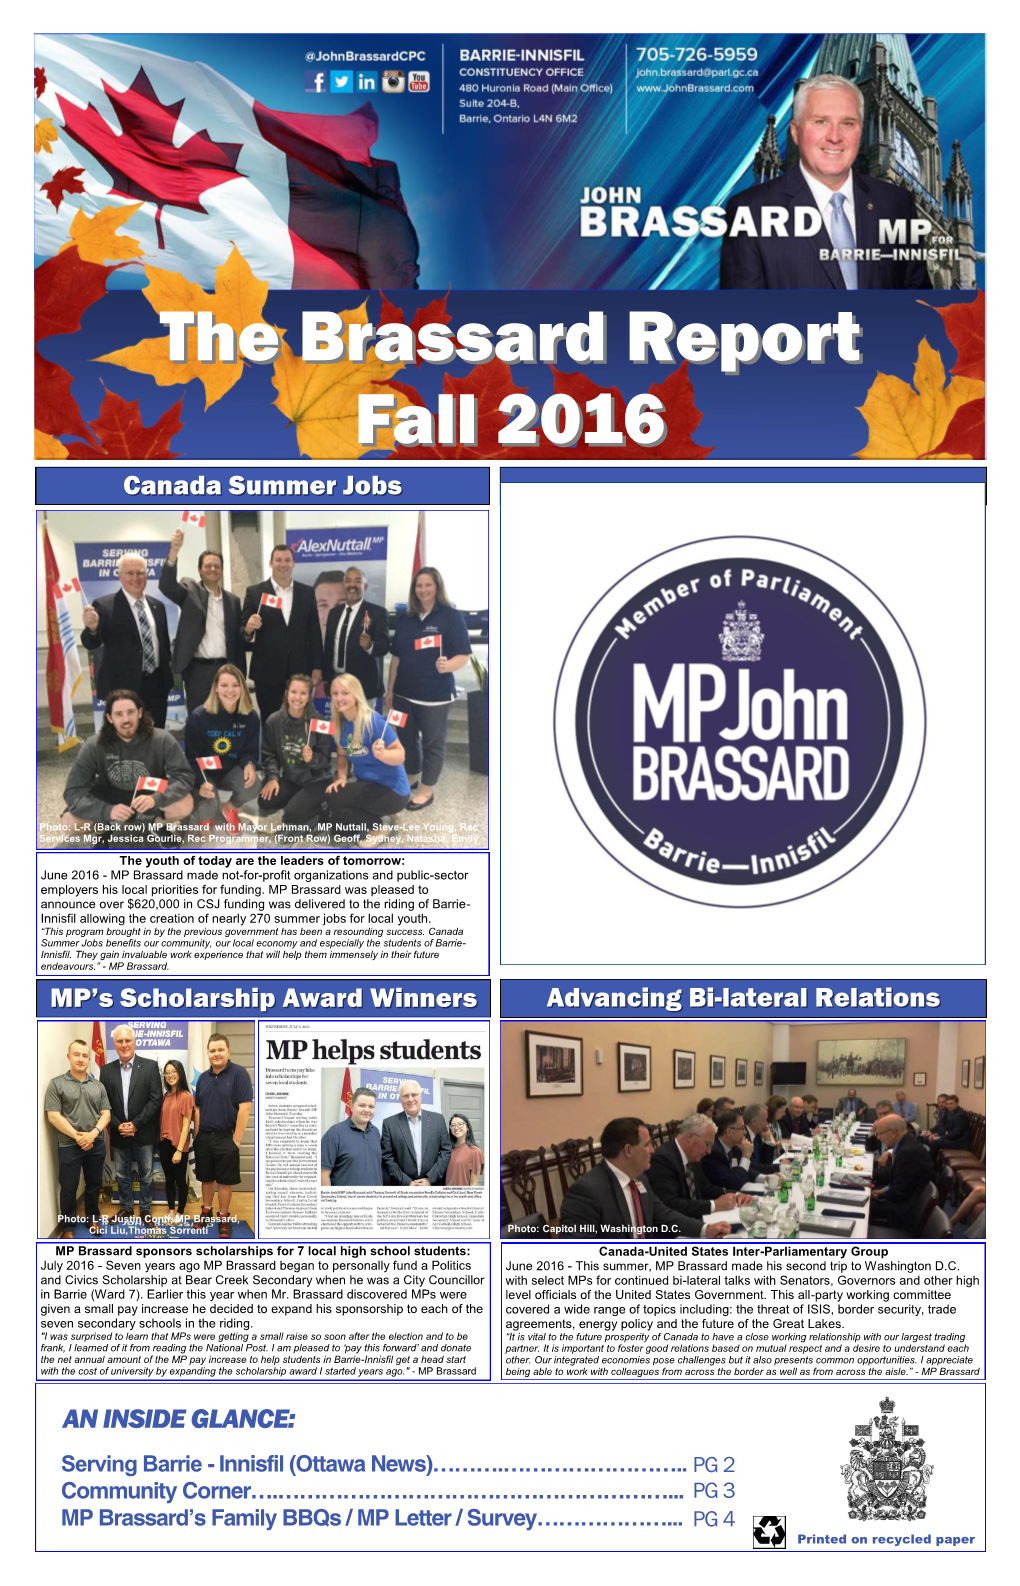 The Brassard Report Fall 2016 Fall 2016